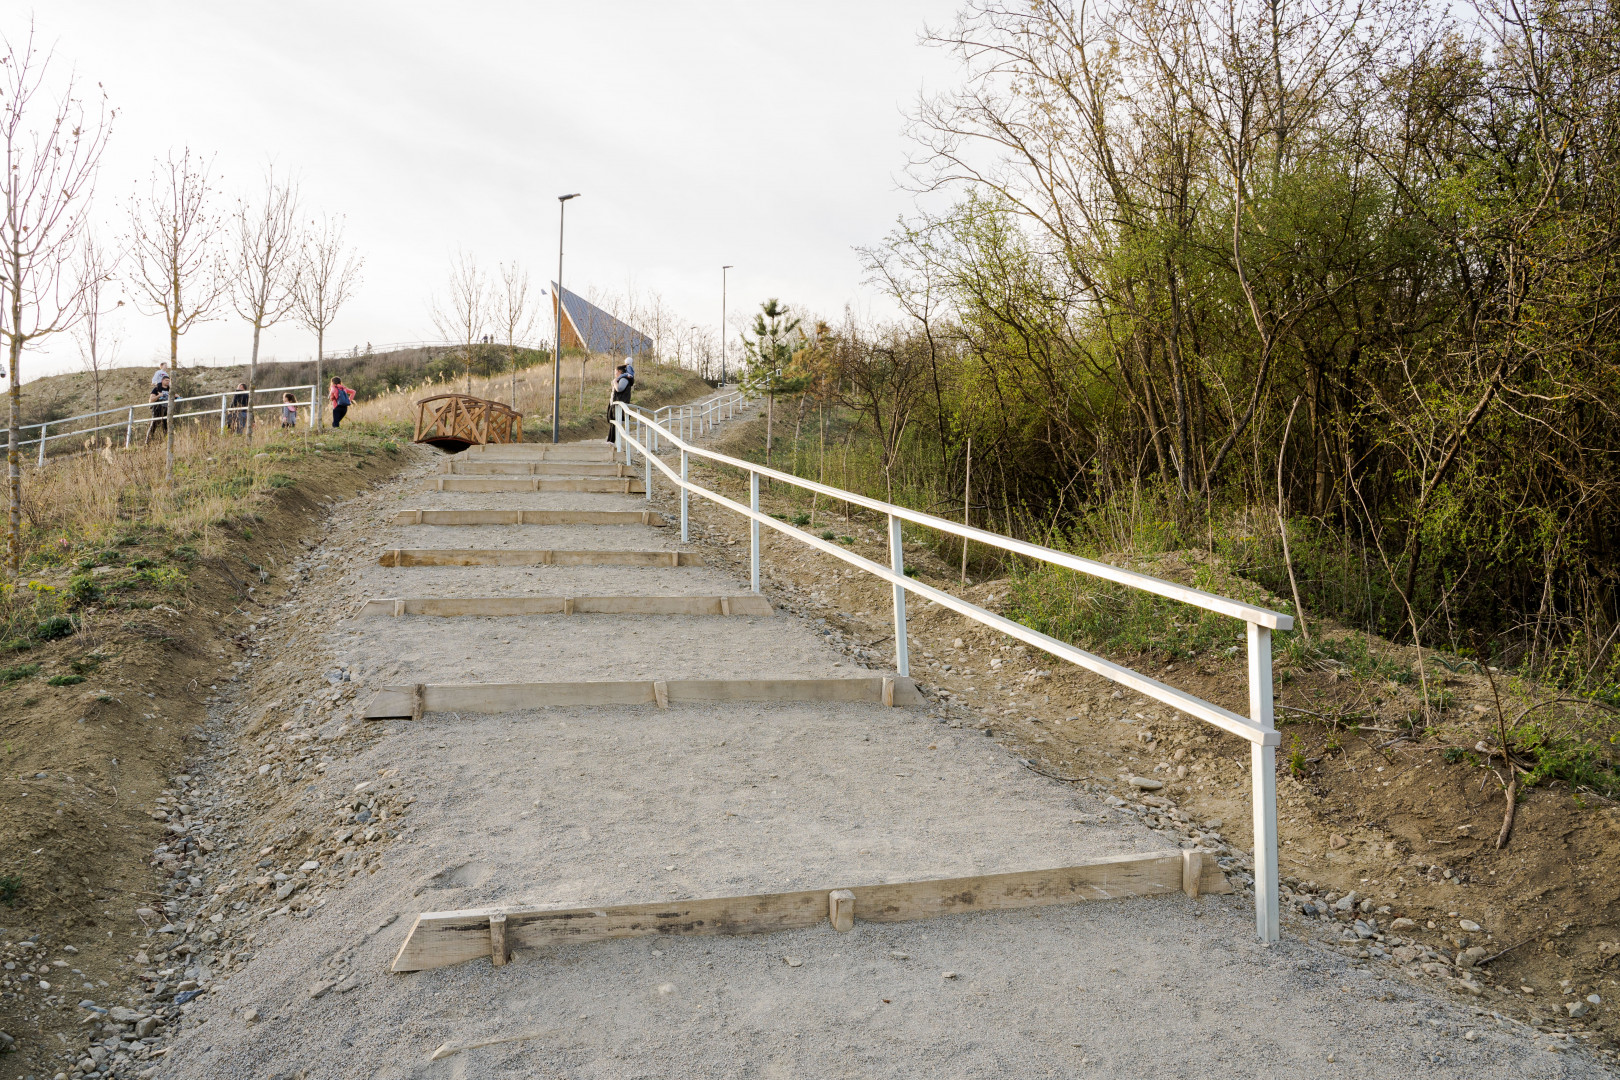 Meredek ezt normális lépcsőnek nevezni, minden esetre ez az út vezet fel a Boc által említett kilátóhoz. – Fotó: Tóth Helga / Transtelex